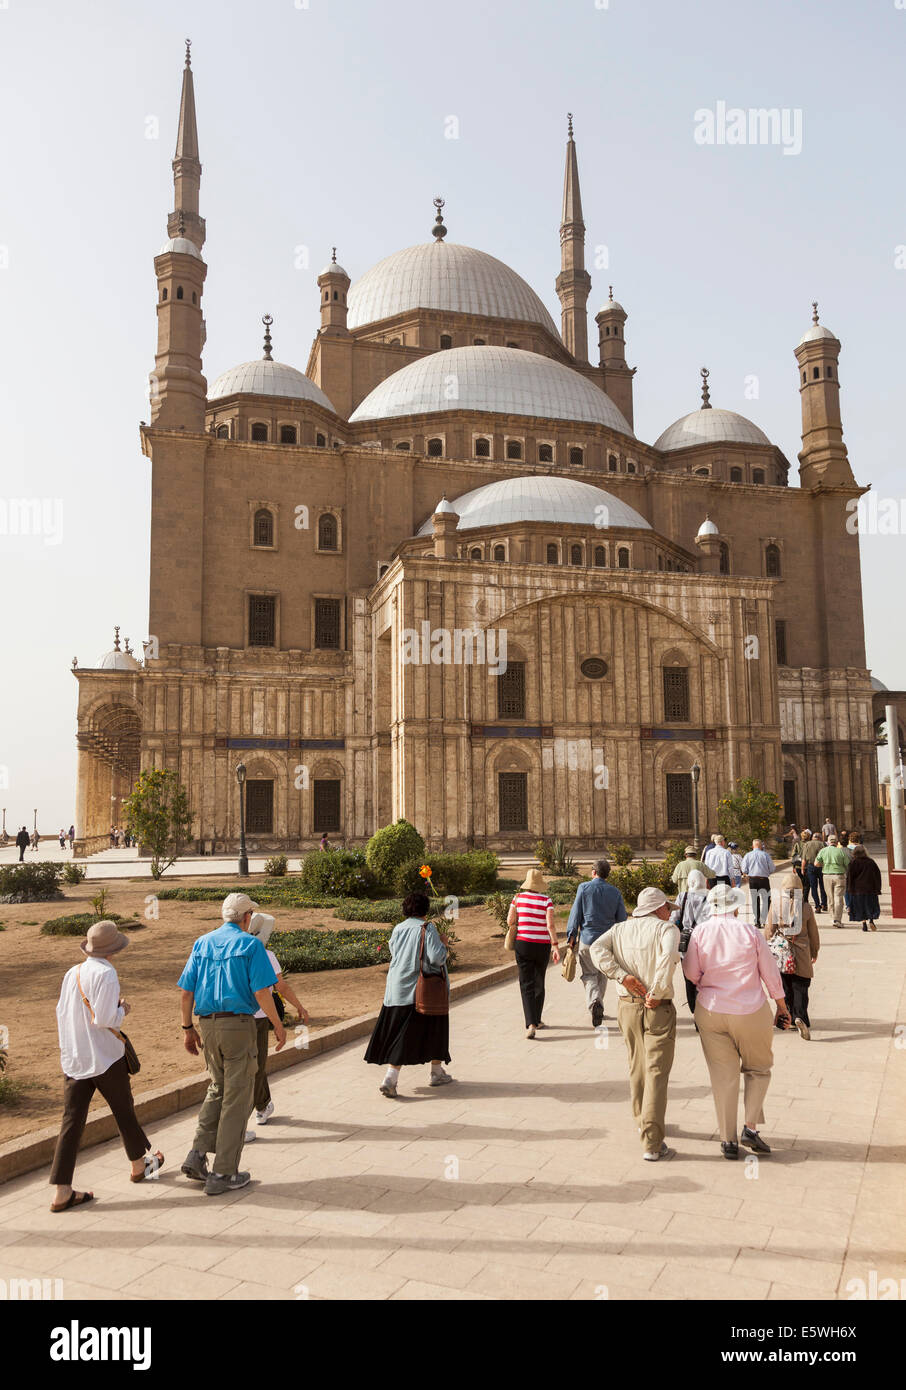 Kairo, Ägypten - Touristen Ansatz die Alabaster-Moschee oder die Moschee von Muhammad Ali Pasha in der Zitadelle von Kairo, Ägypten Stockfoto